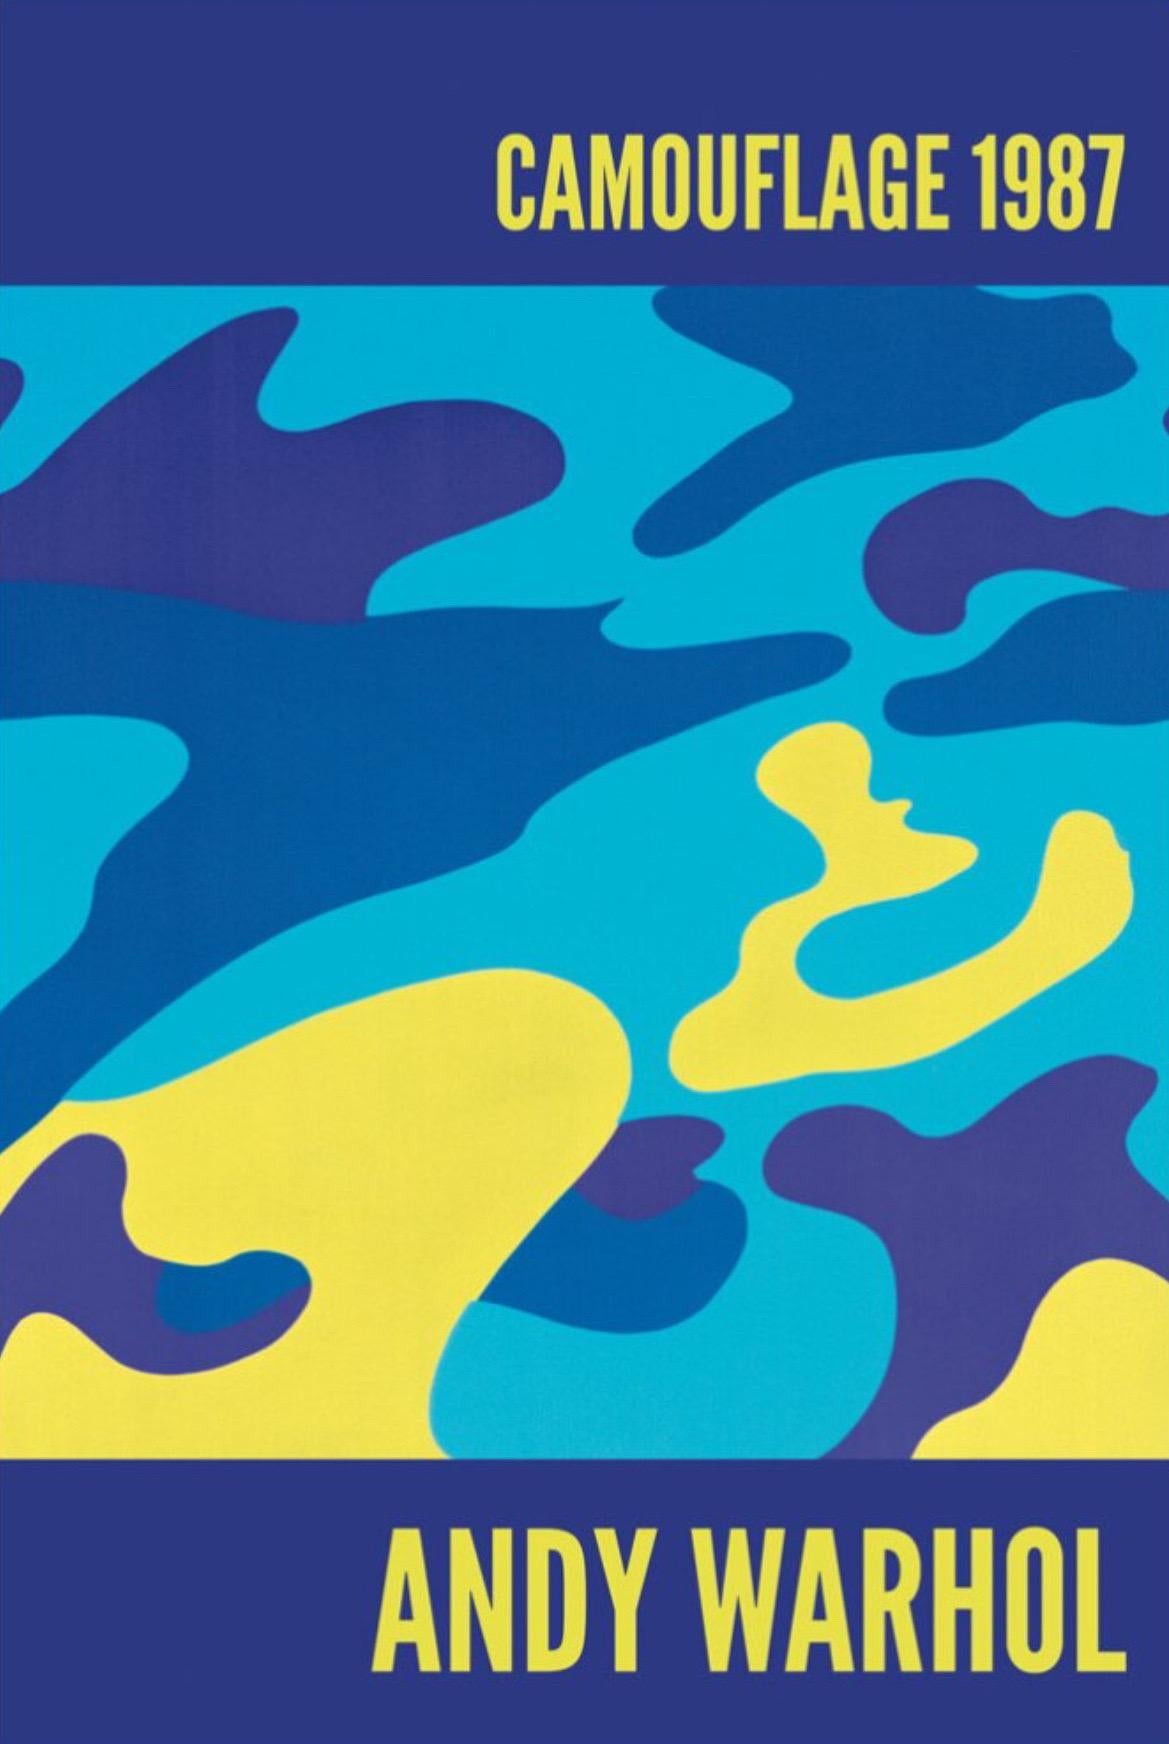 Andy Warhol, Camouflage, 1987

Papier numérique de conservation mat de 250 g/m².

60 x 90 cm (23.62 x 35.43 in) 

Les séries de camouflages d'Andy Warhol sont empreintes de tout ce qu'il voulait dire sur l'art, sur lui-même et sur nous. Dans la